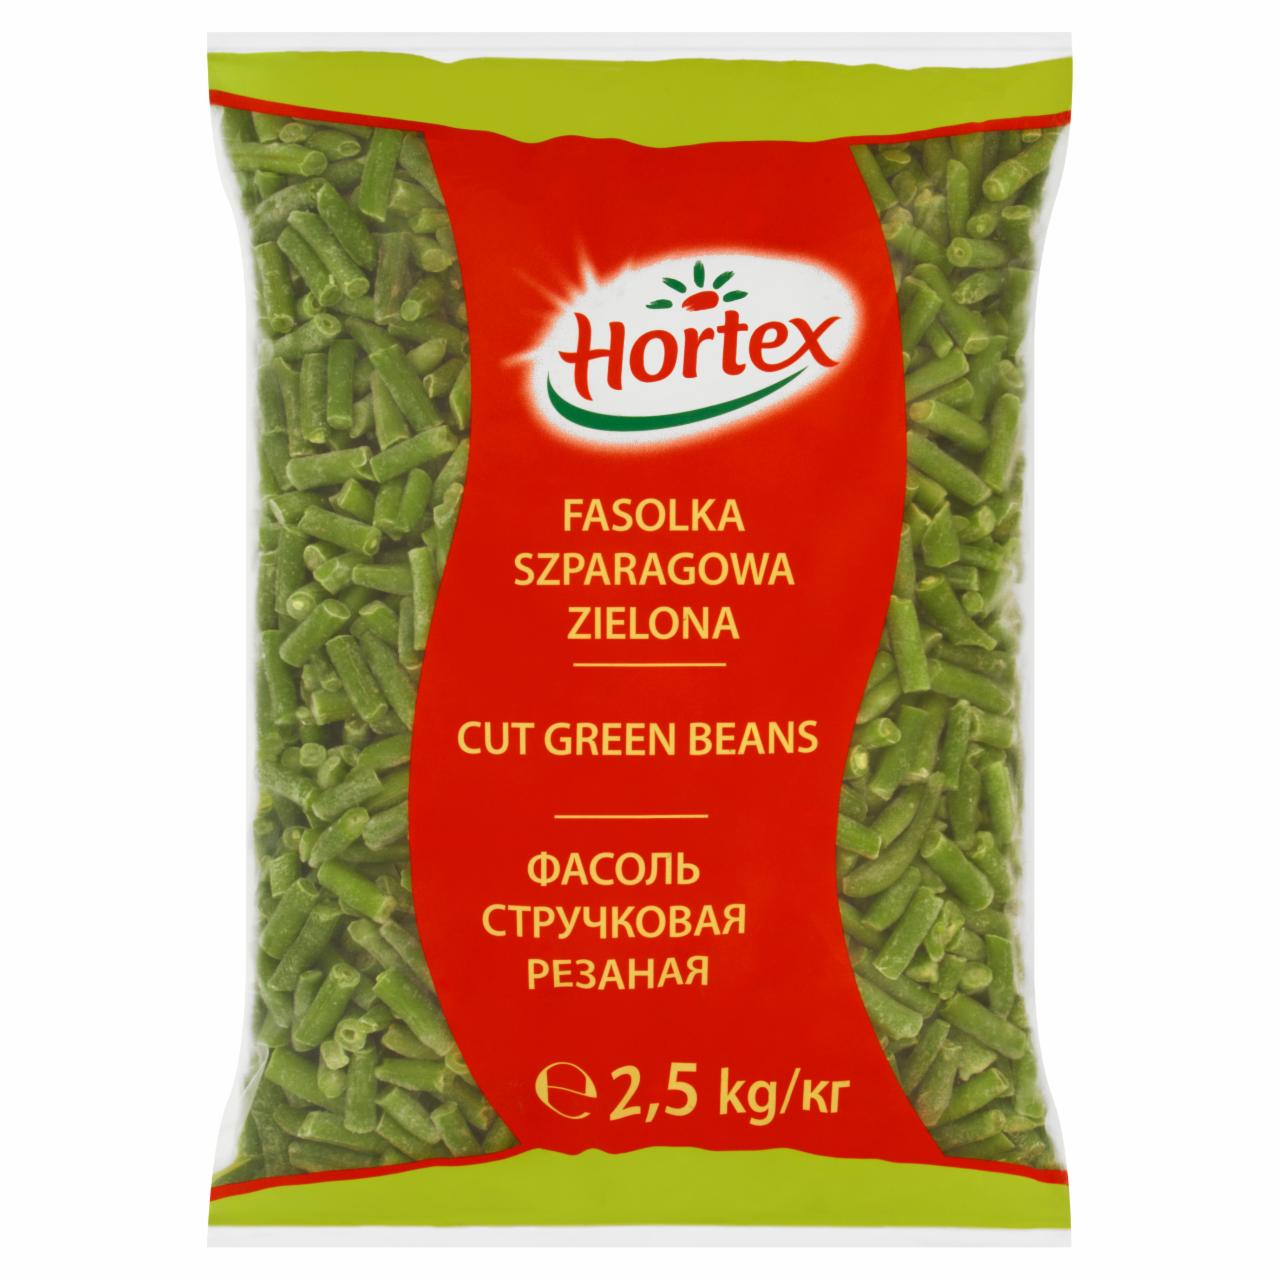 Zdjęcia - Hortex Fasola szparagowa zielona 2,5 kg